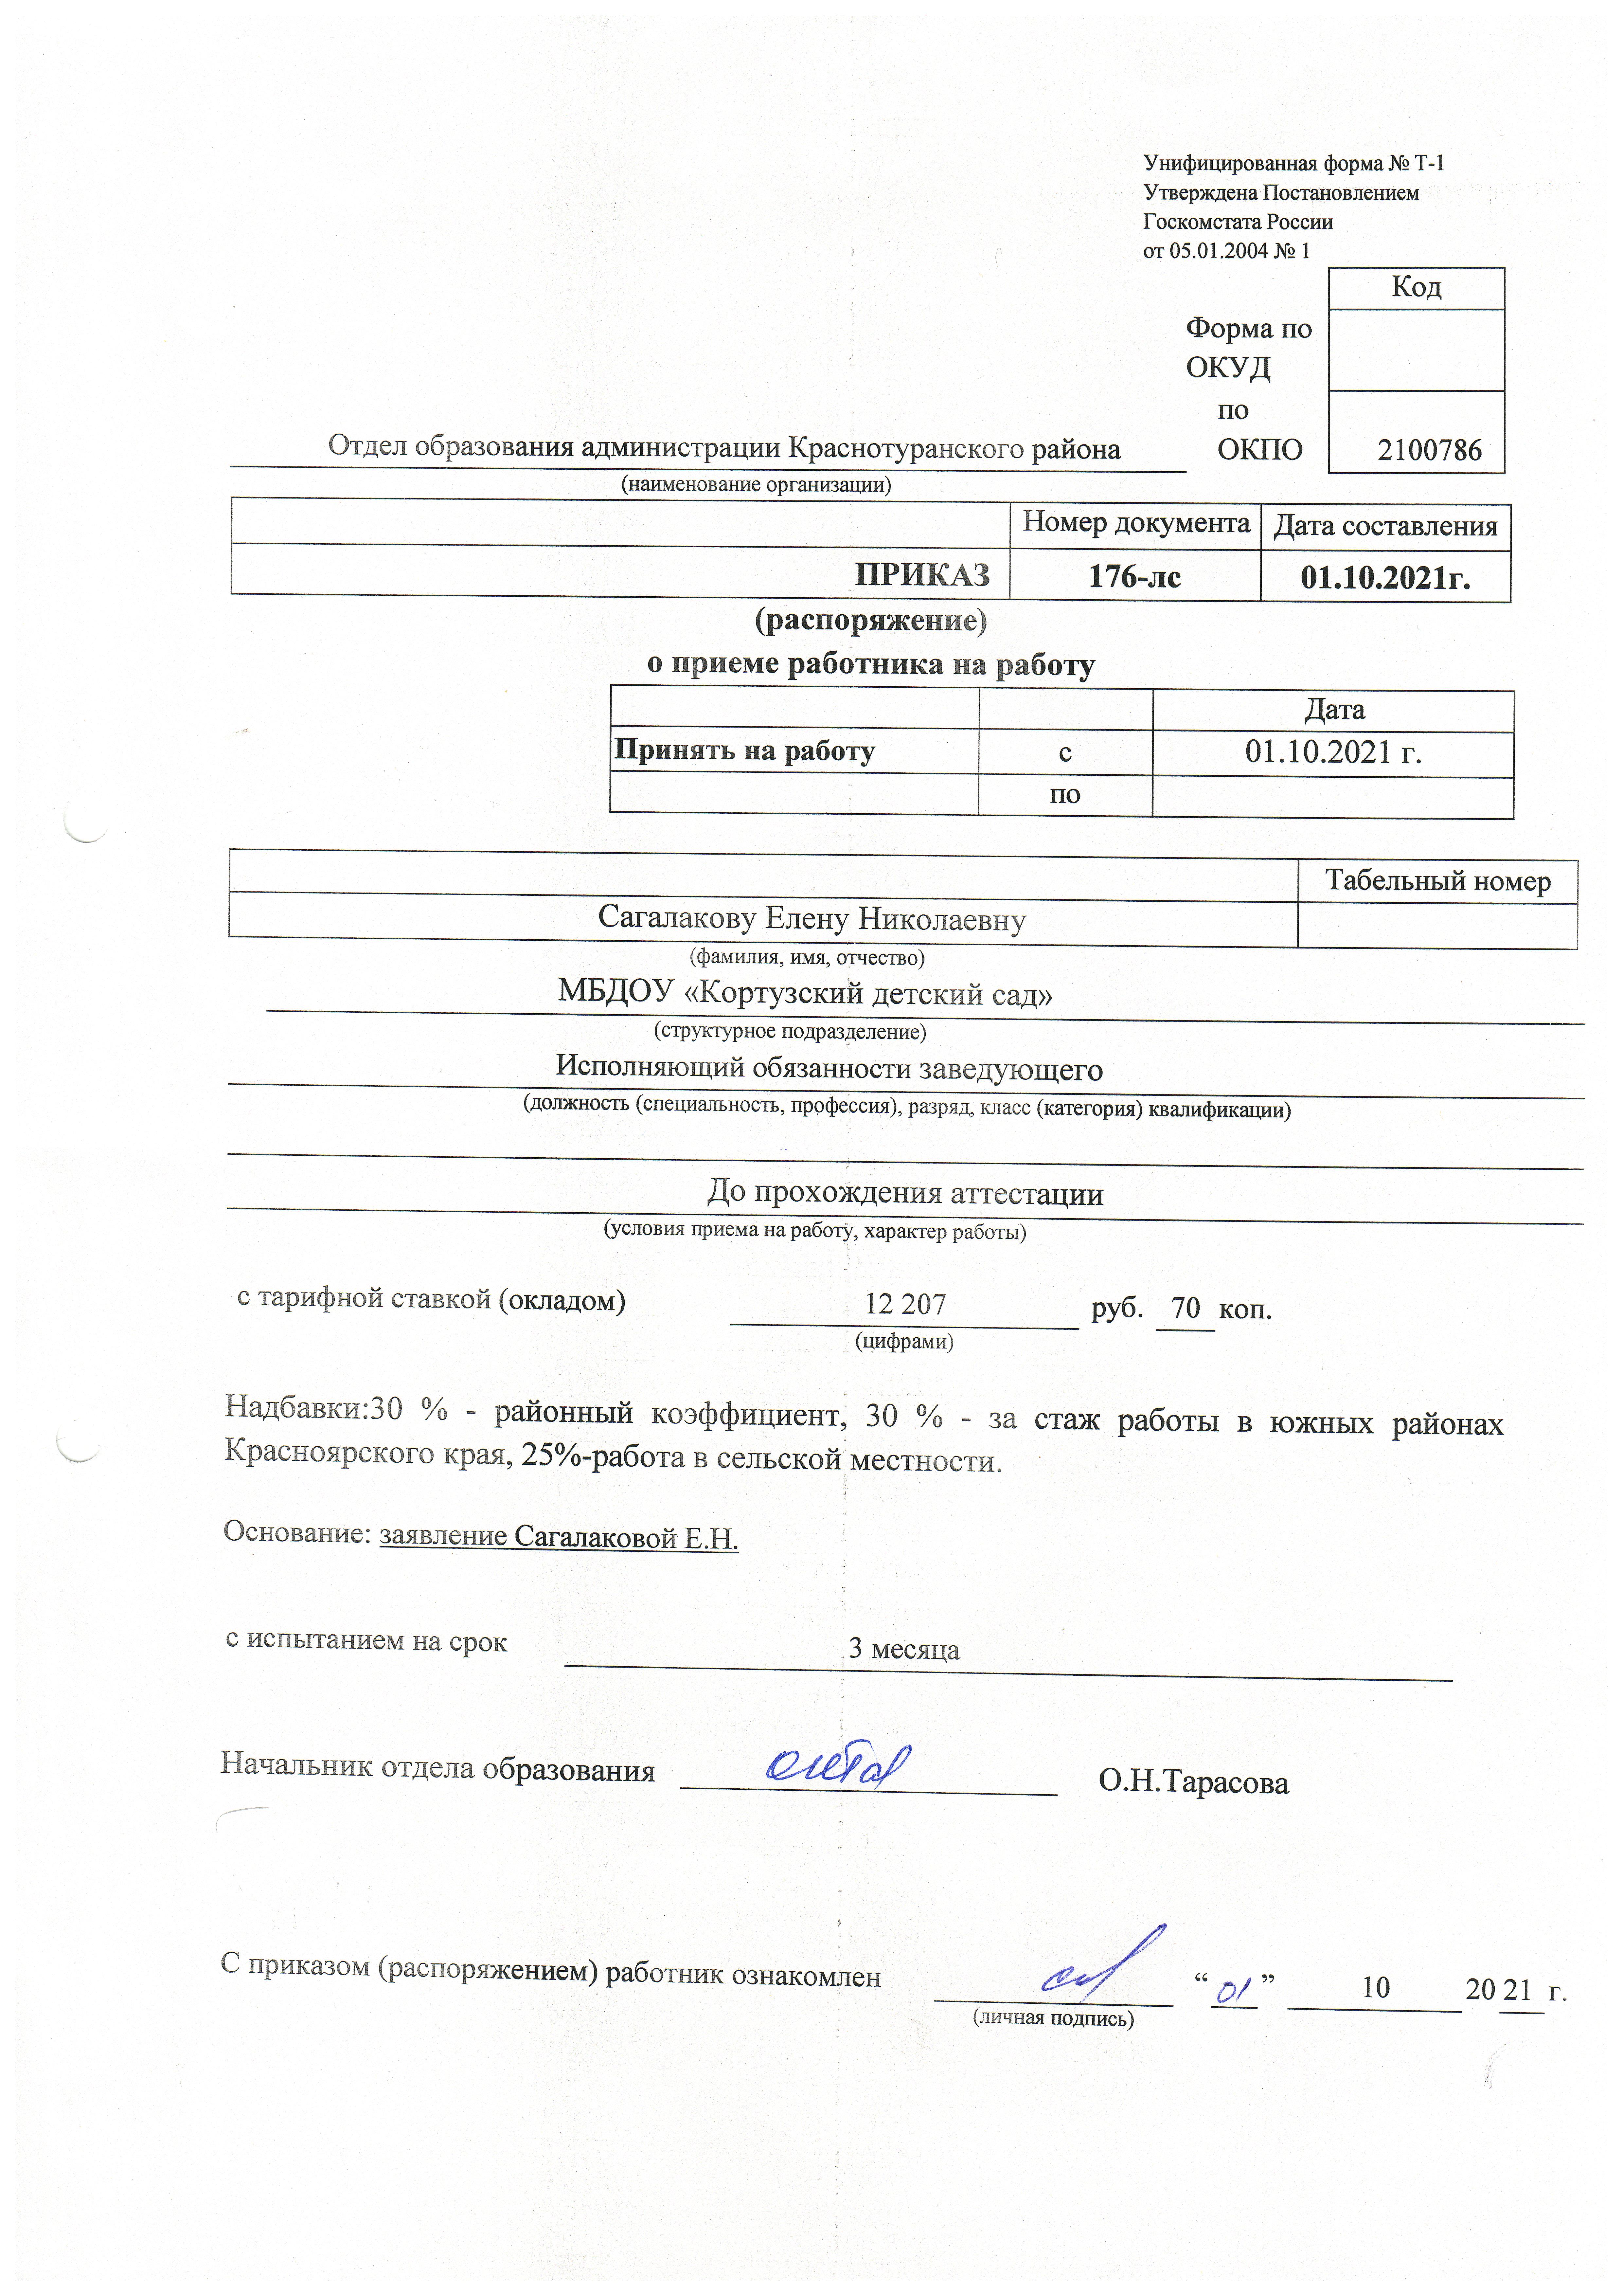 приказ на назначении на должность Сагалакова